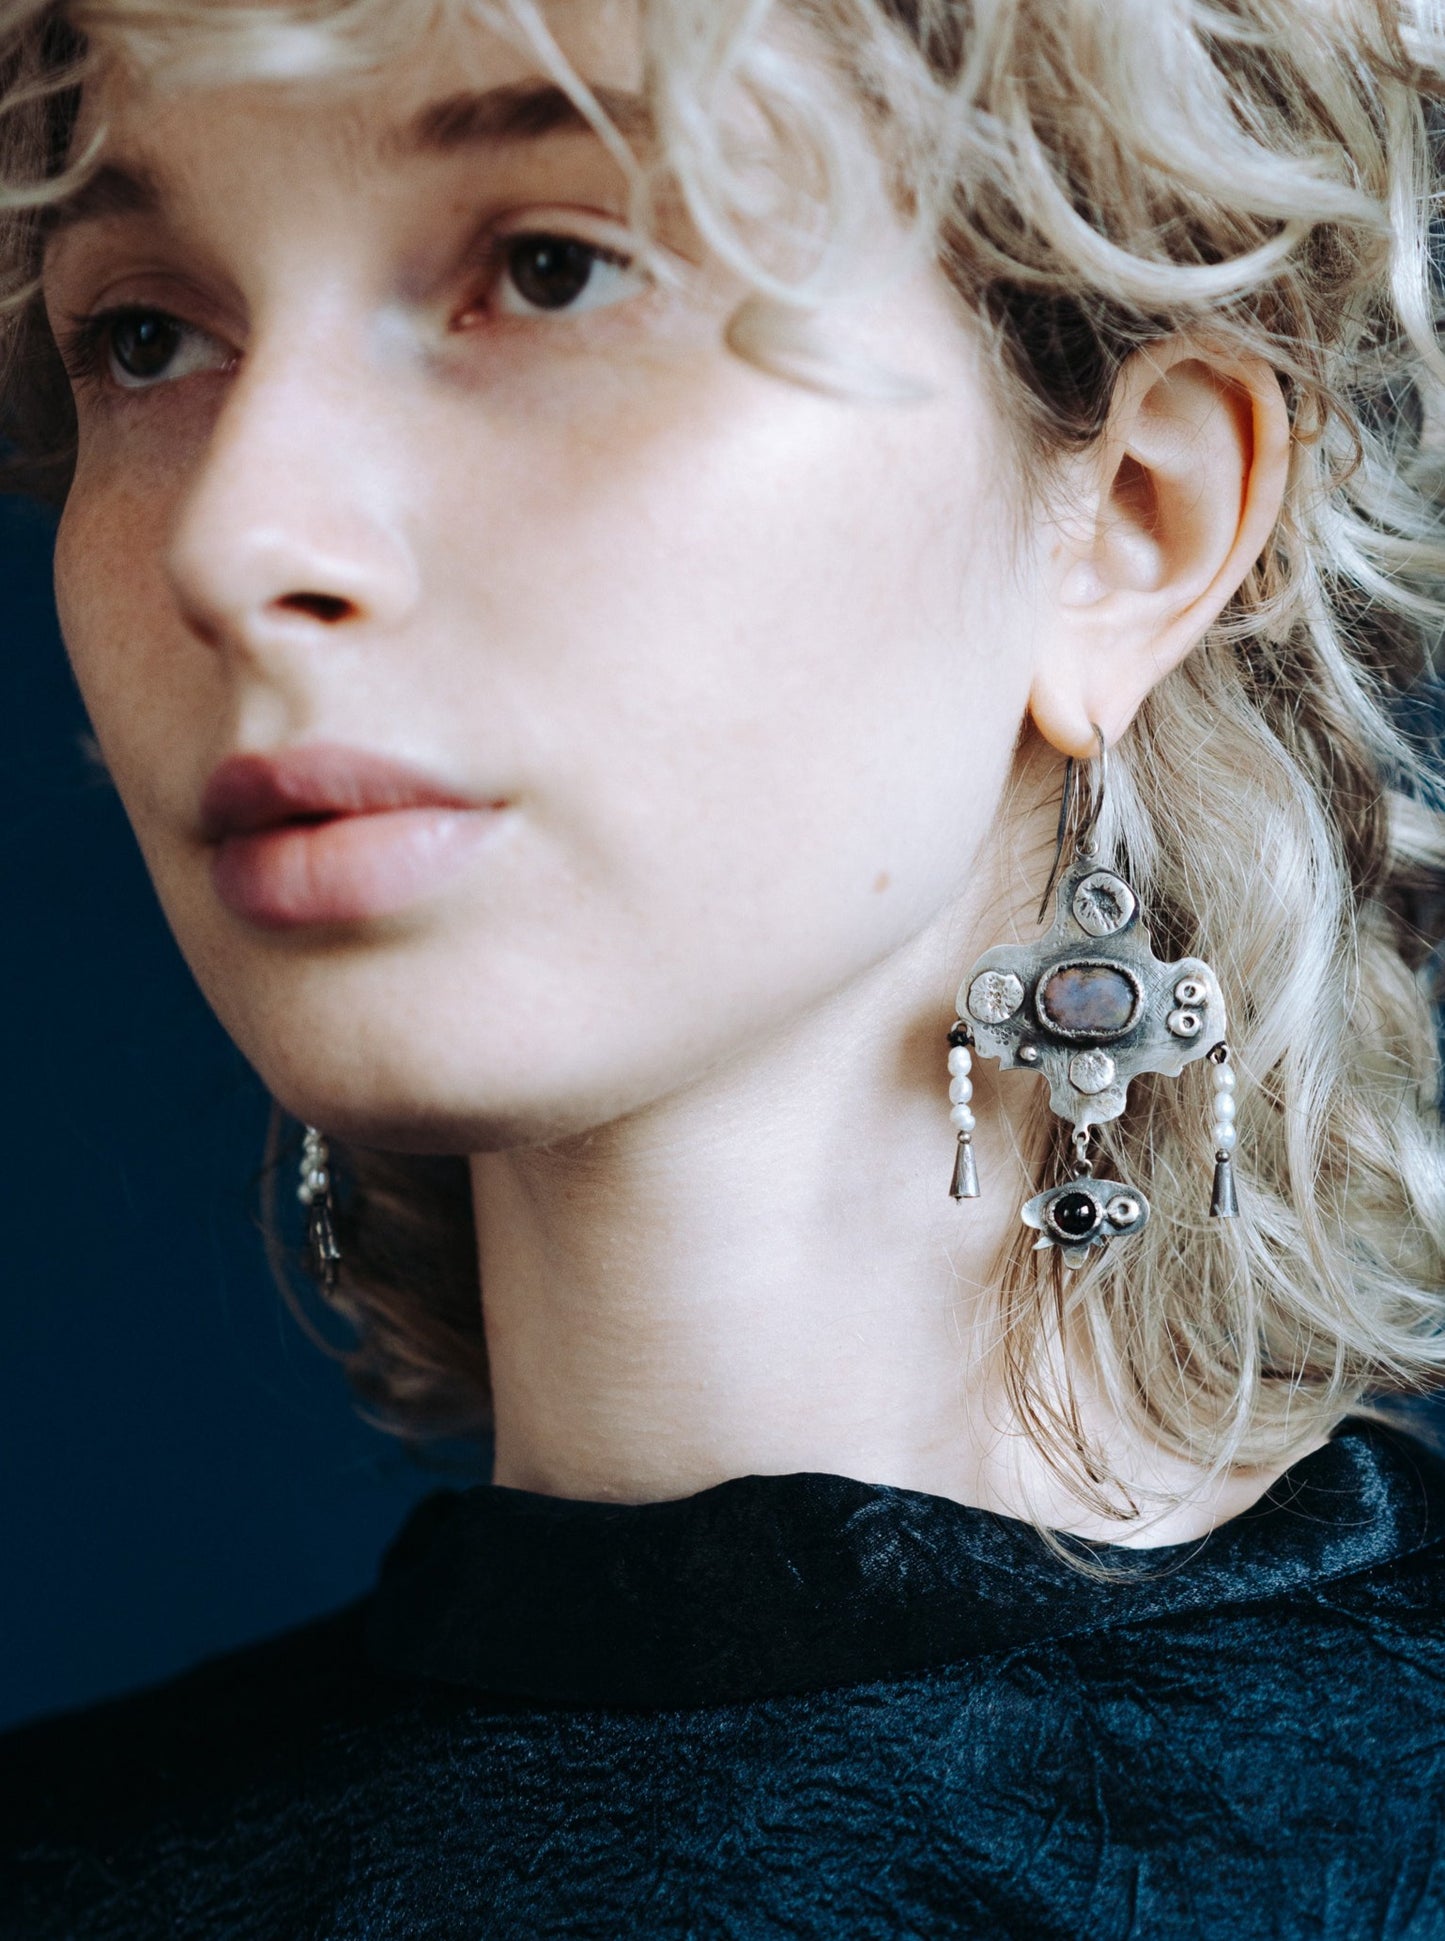 Large ethnic earrings